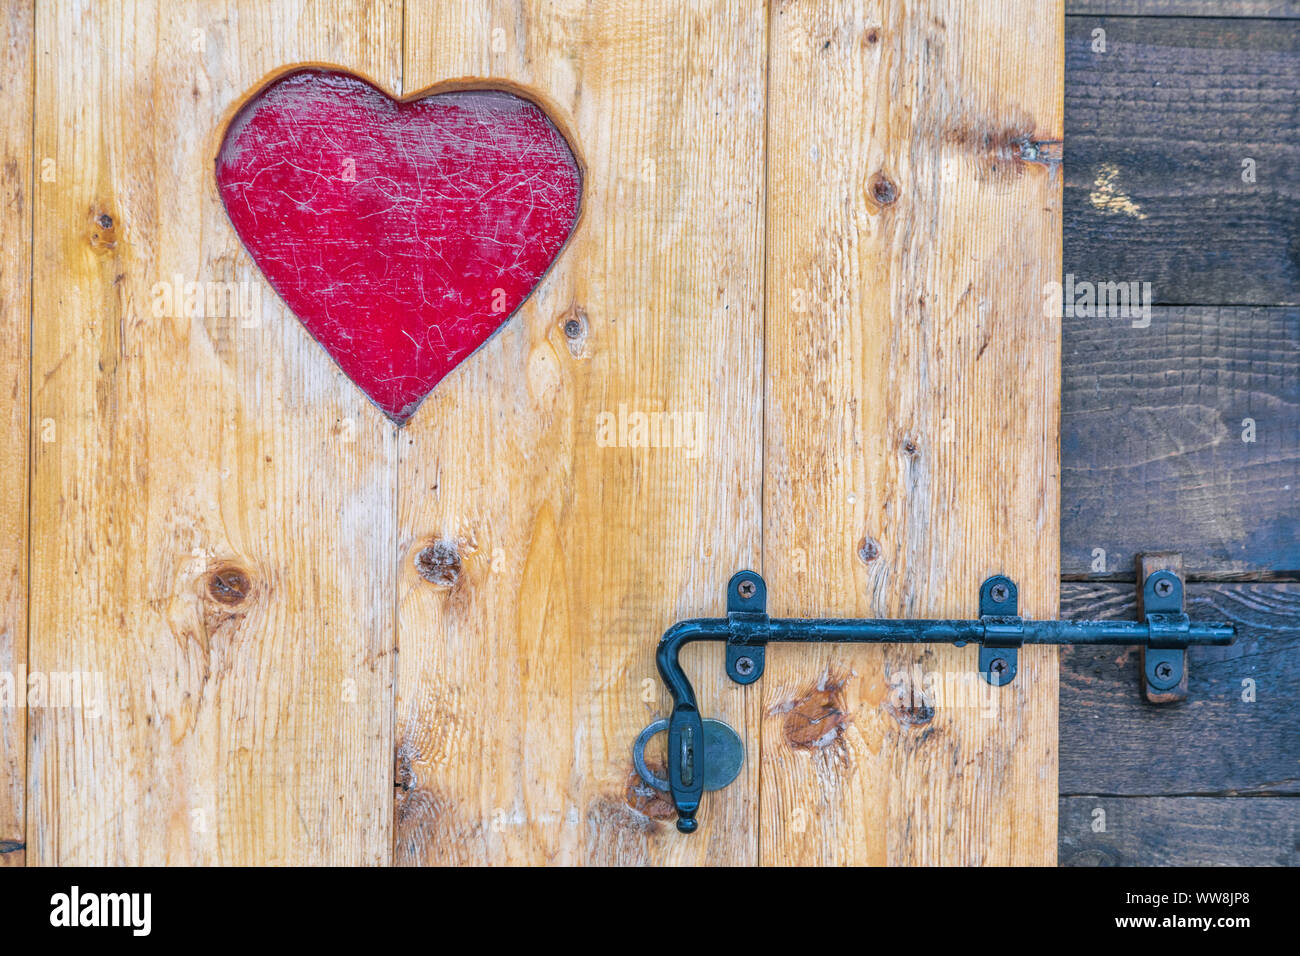 Puerta de madera rústica con corazón decoración, cerrada con pestillo Foto de stock